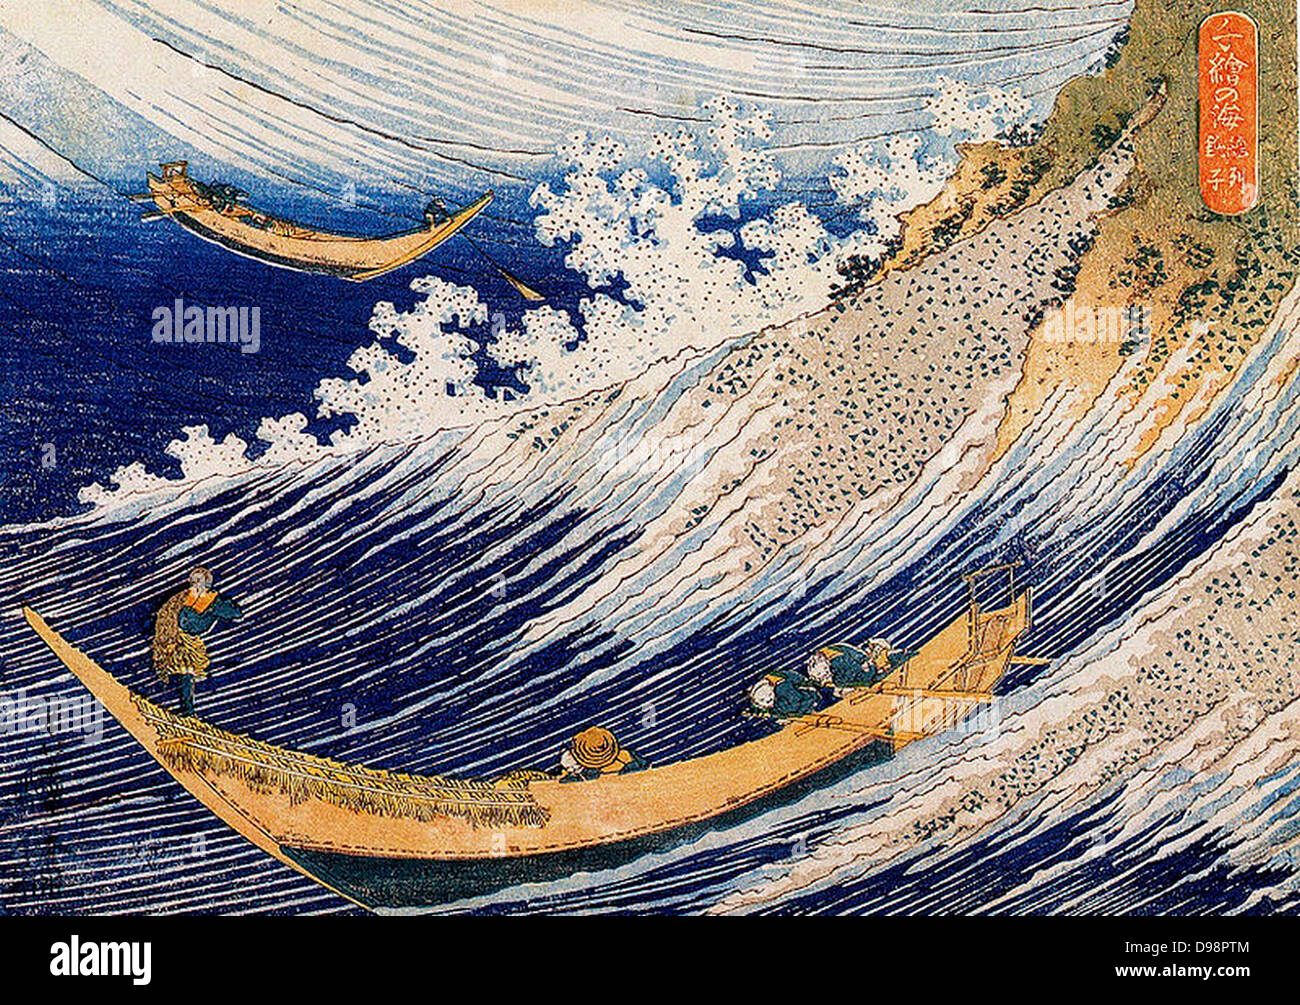 Une mer sauvage à Choshi : de 'un millier de photos de l'Océan" c1833. Katsushika Hokusai (1760-1849) artiste japonais Ukiyo-e. Deux bateaux de pêche se débattent dans d'énormes vagues. Spume eau avirons Rudder Banque D'Images